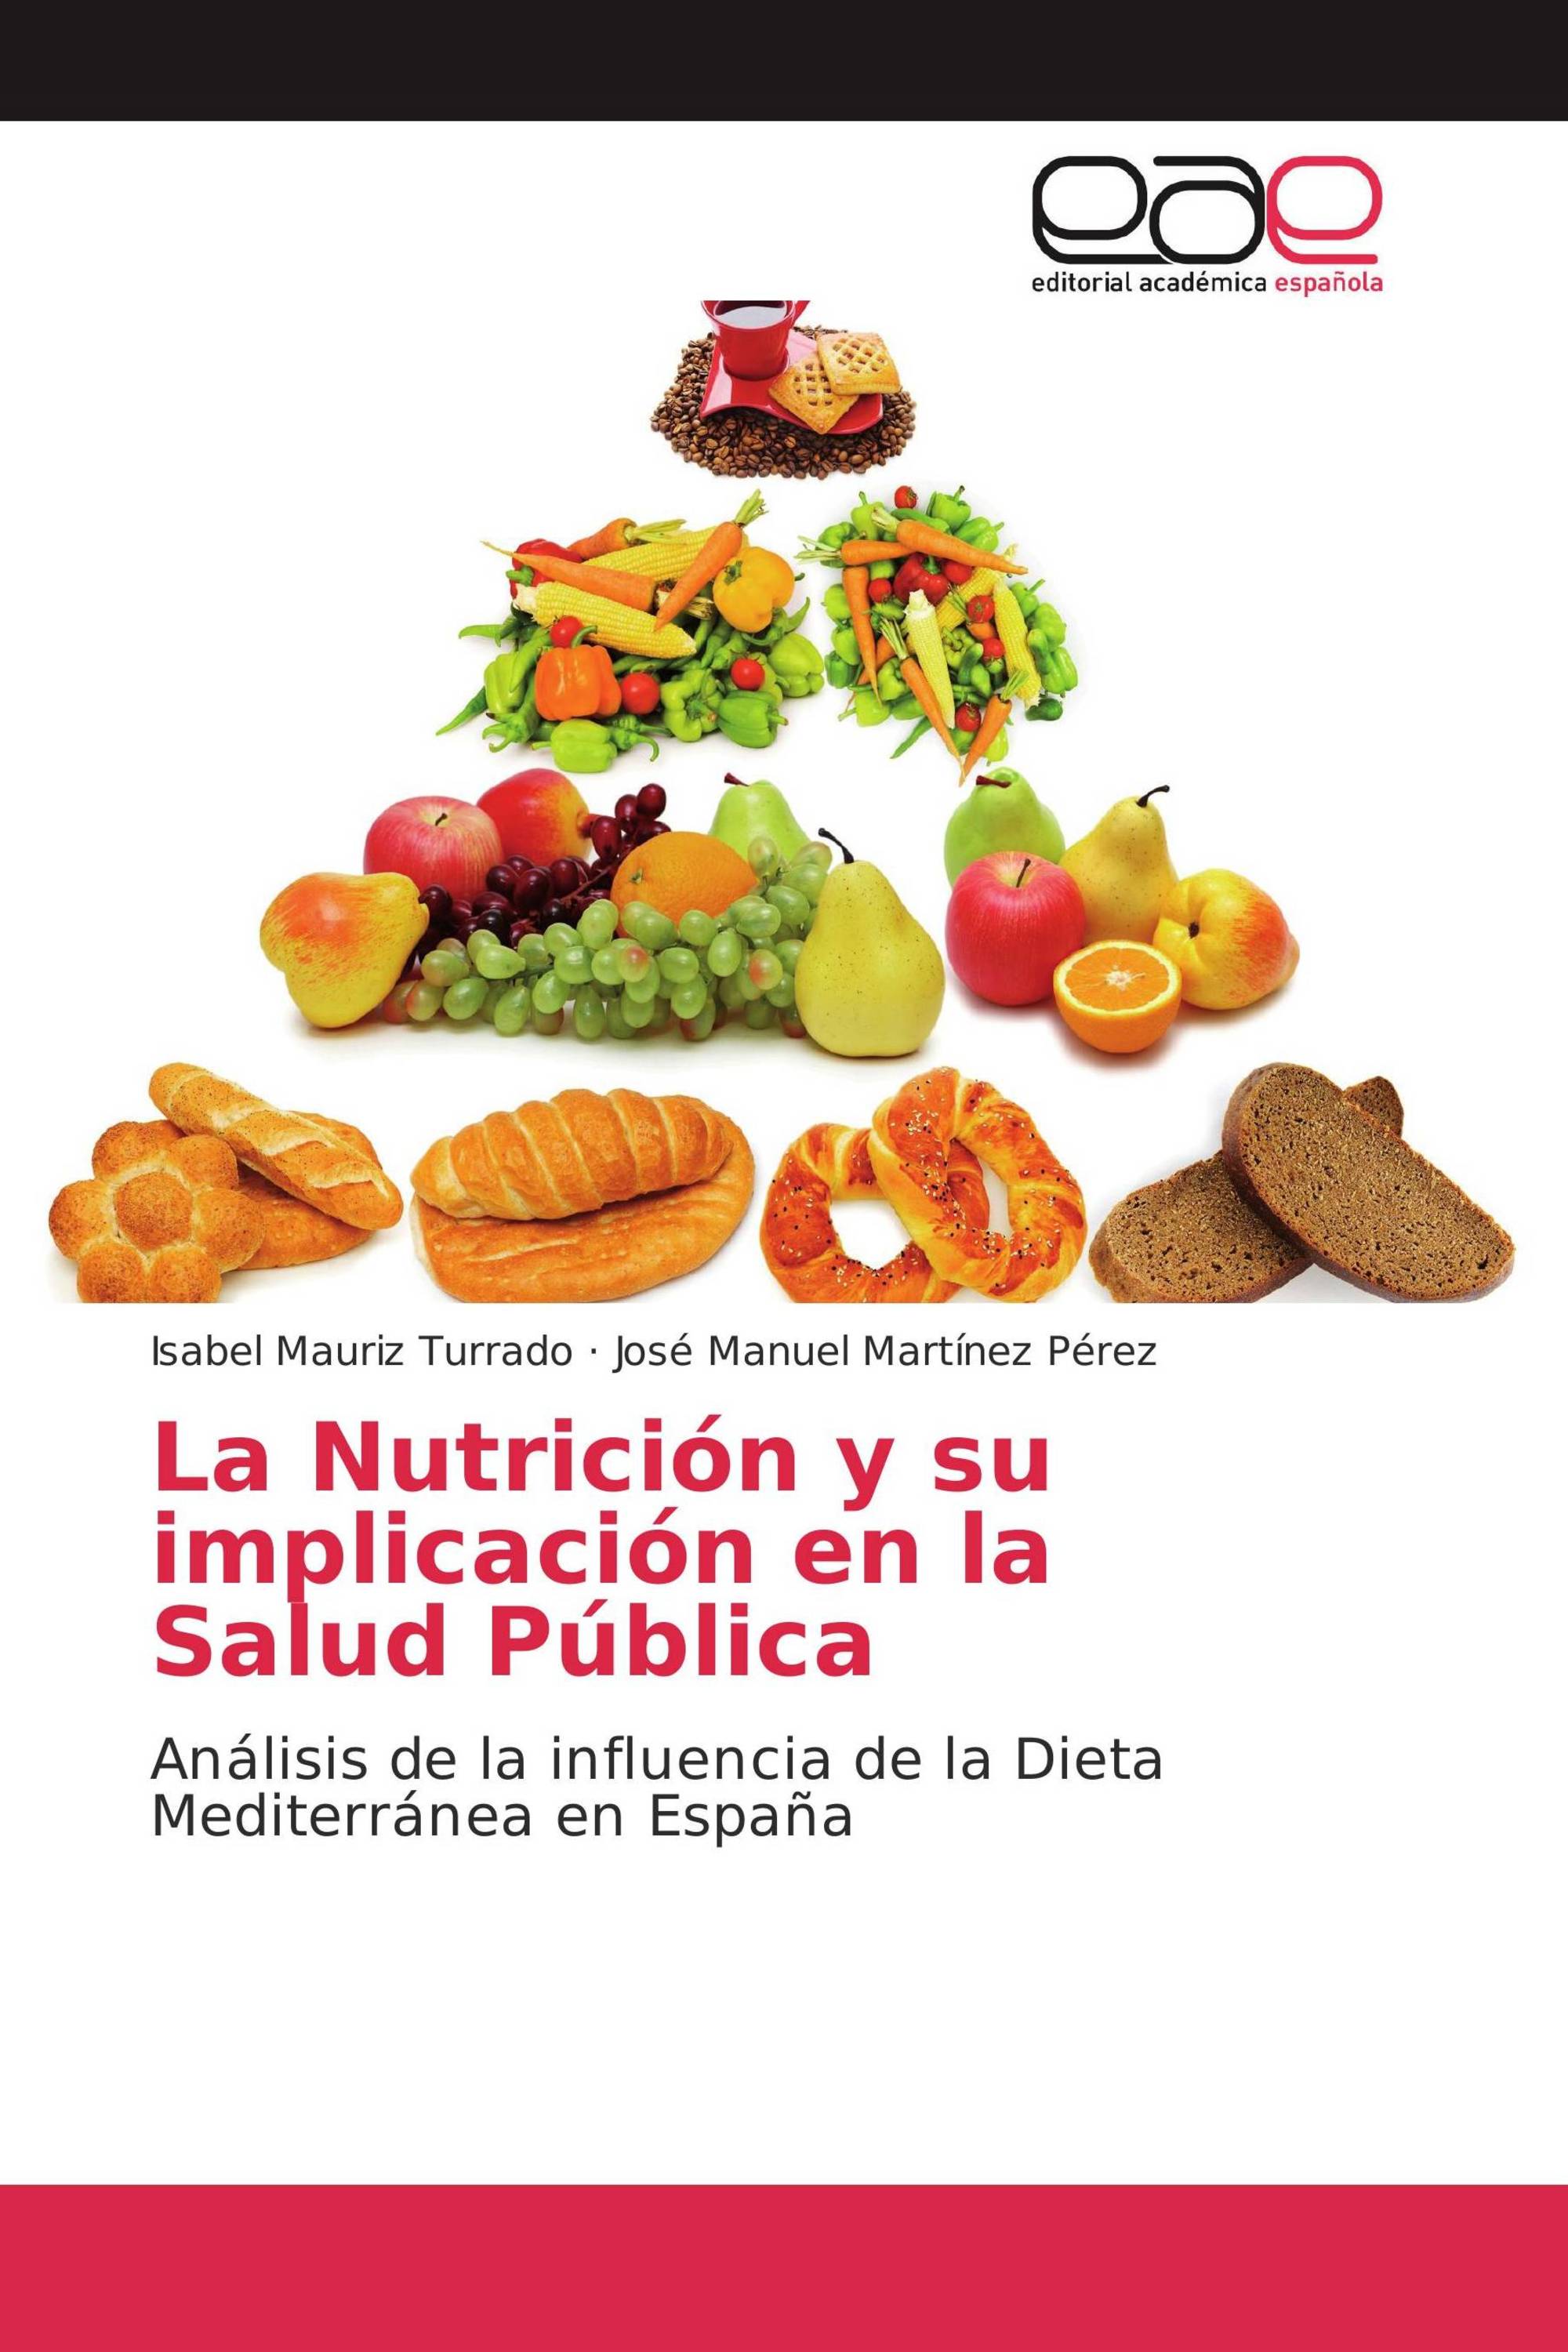 Imagen de portada del libro La Nutrición y su implicación en la Salud Pública